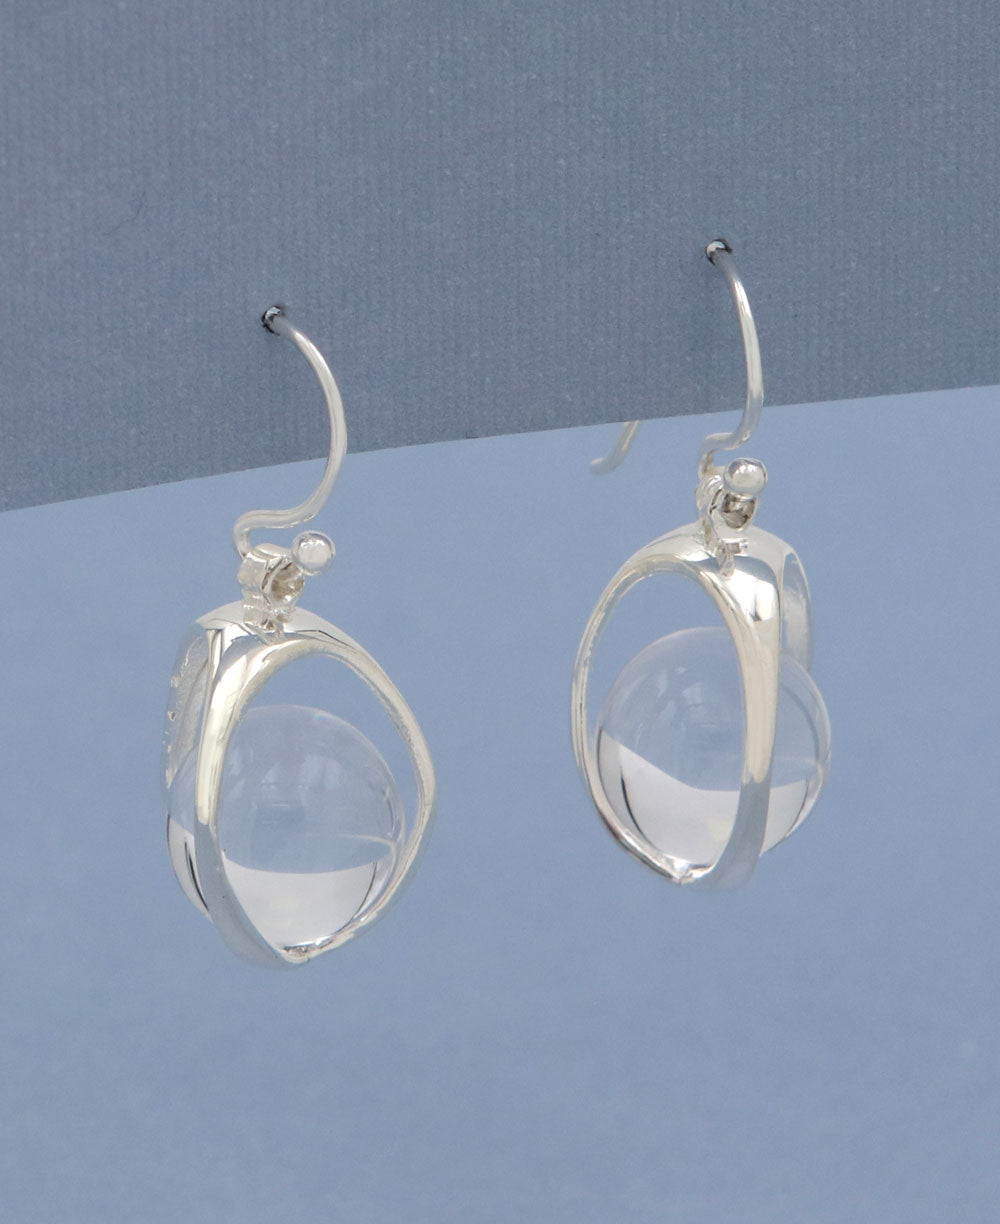 Crystal Ball Gemstone Orb Earrings, Sterling Silver - Earrings